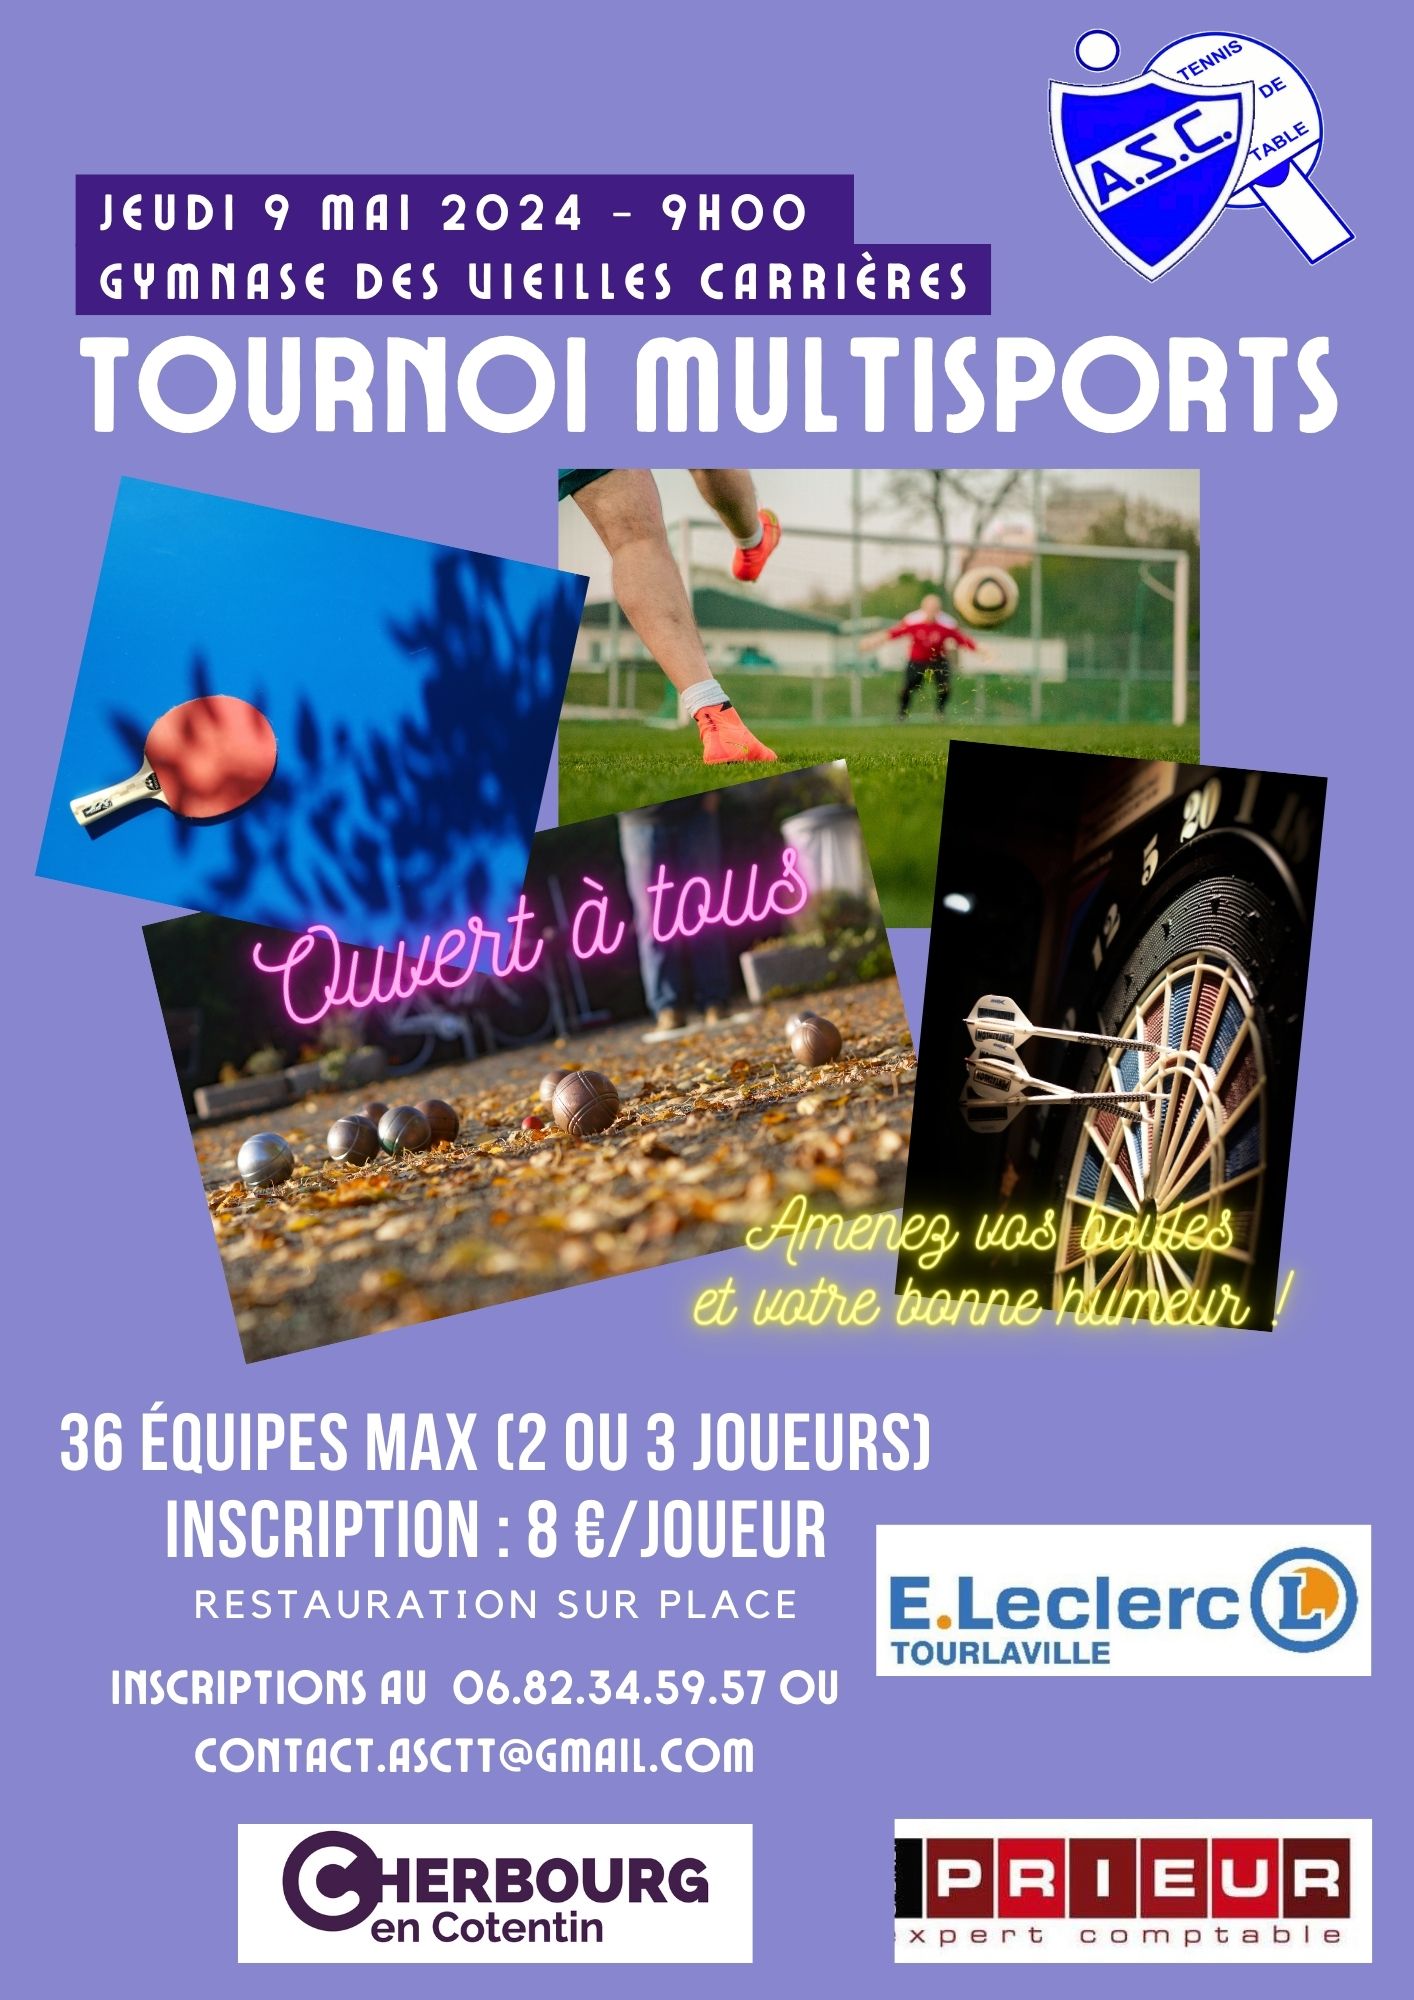 09/05/2024 : Réservez votre journée pour le tournoi multisports !!!